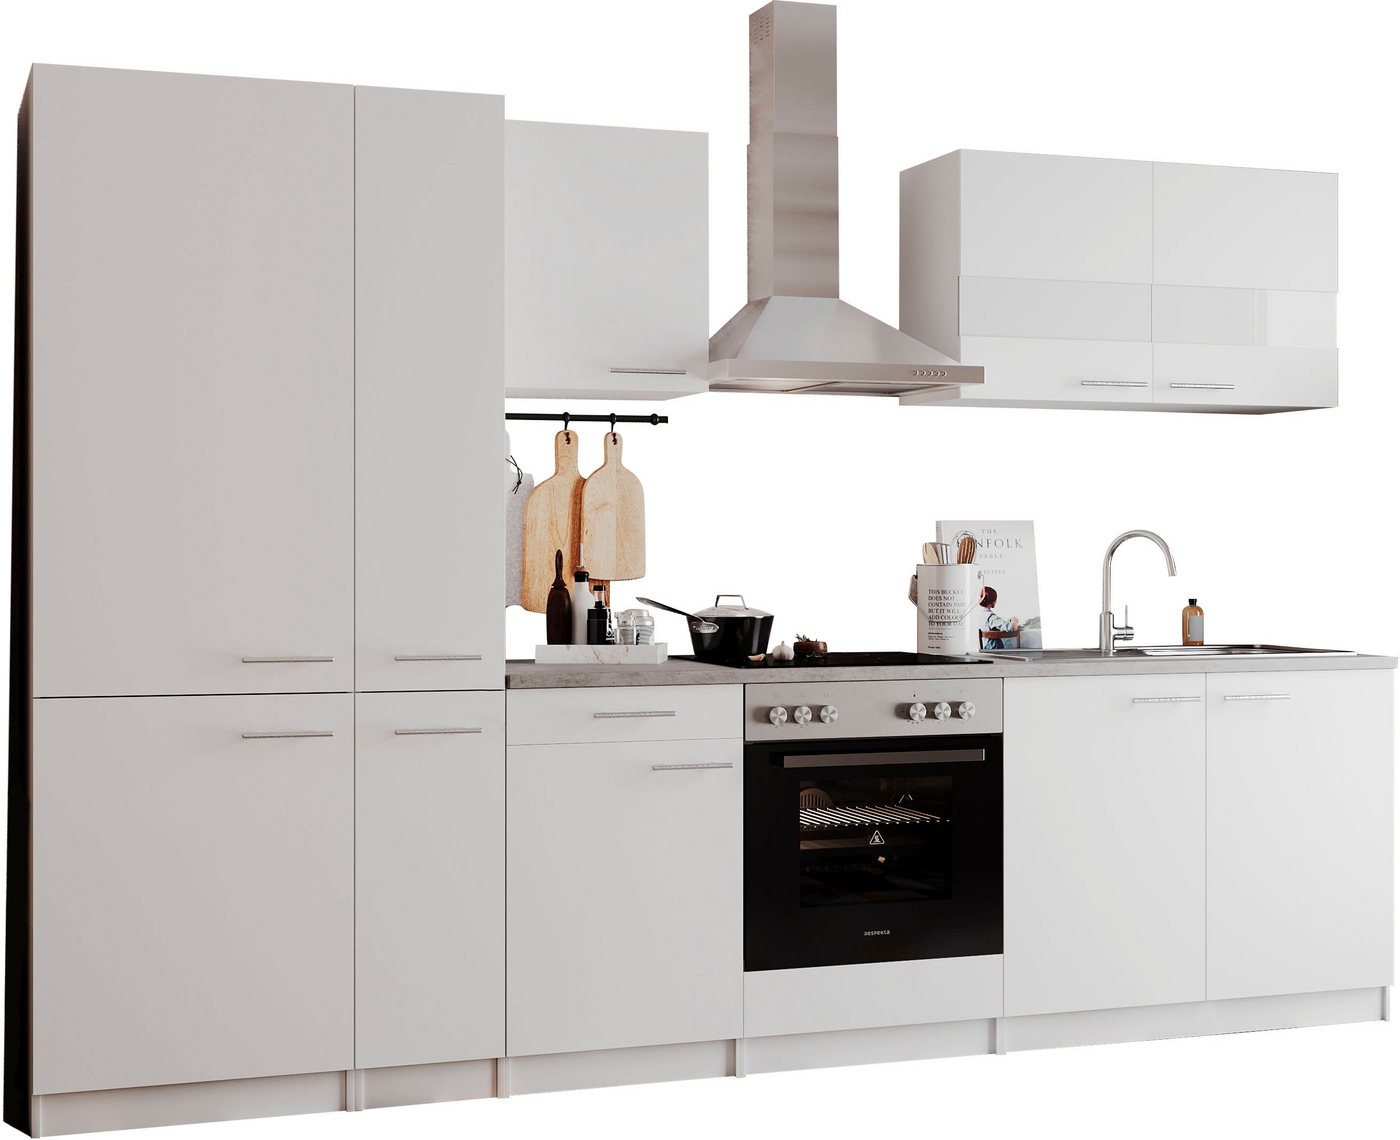 RESPEKTA Küchenzeile Malia, Breite 300 cm, mit Soft-Close, in exklusiver Konfiguration für OTTO von RESPEKTA